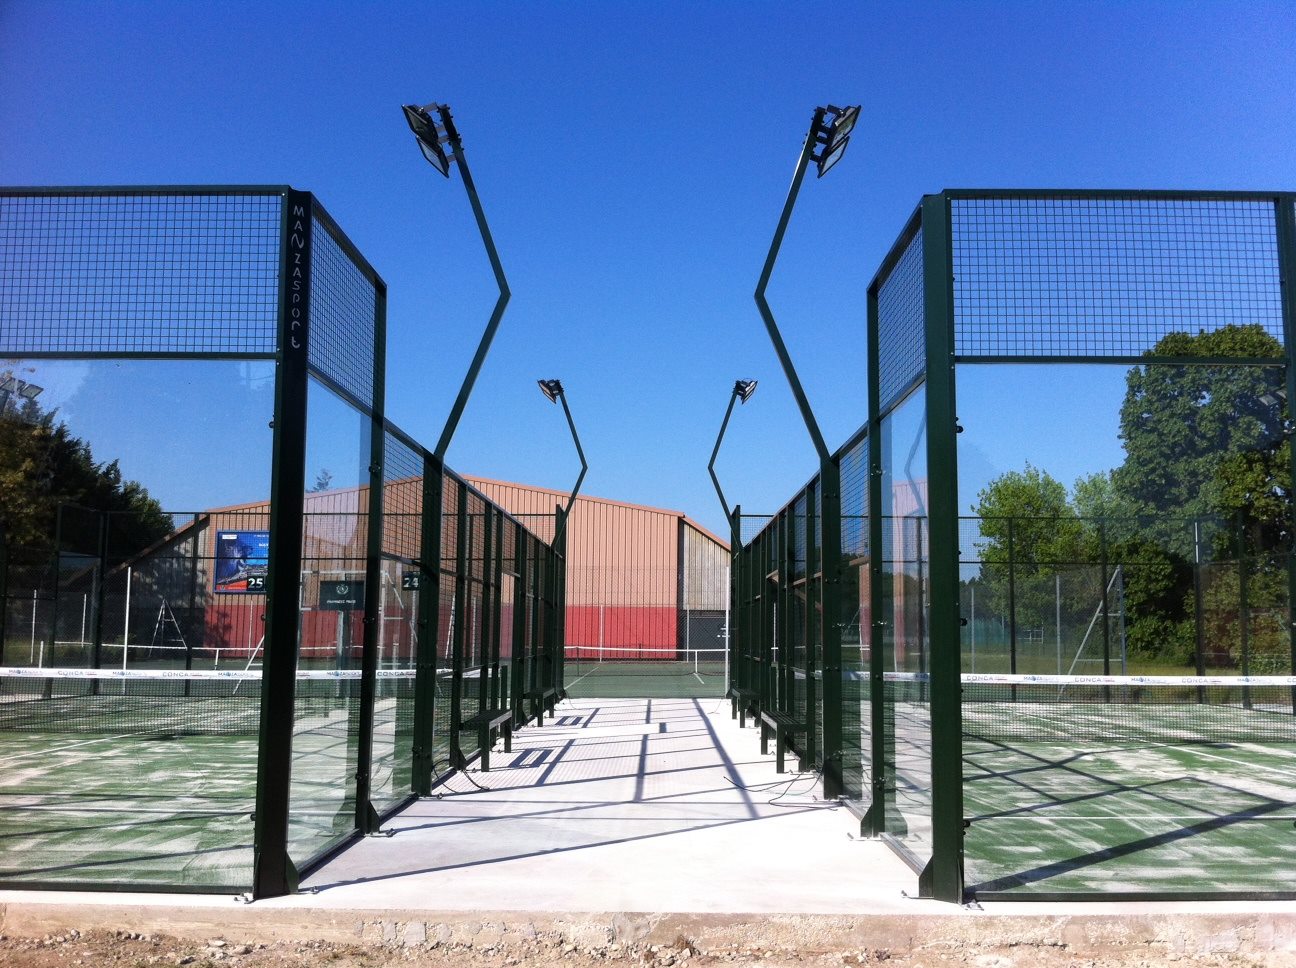 Tennis Club de Lyon offers 2 paddle courts